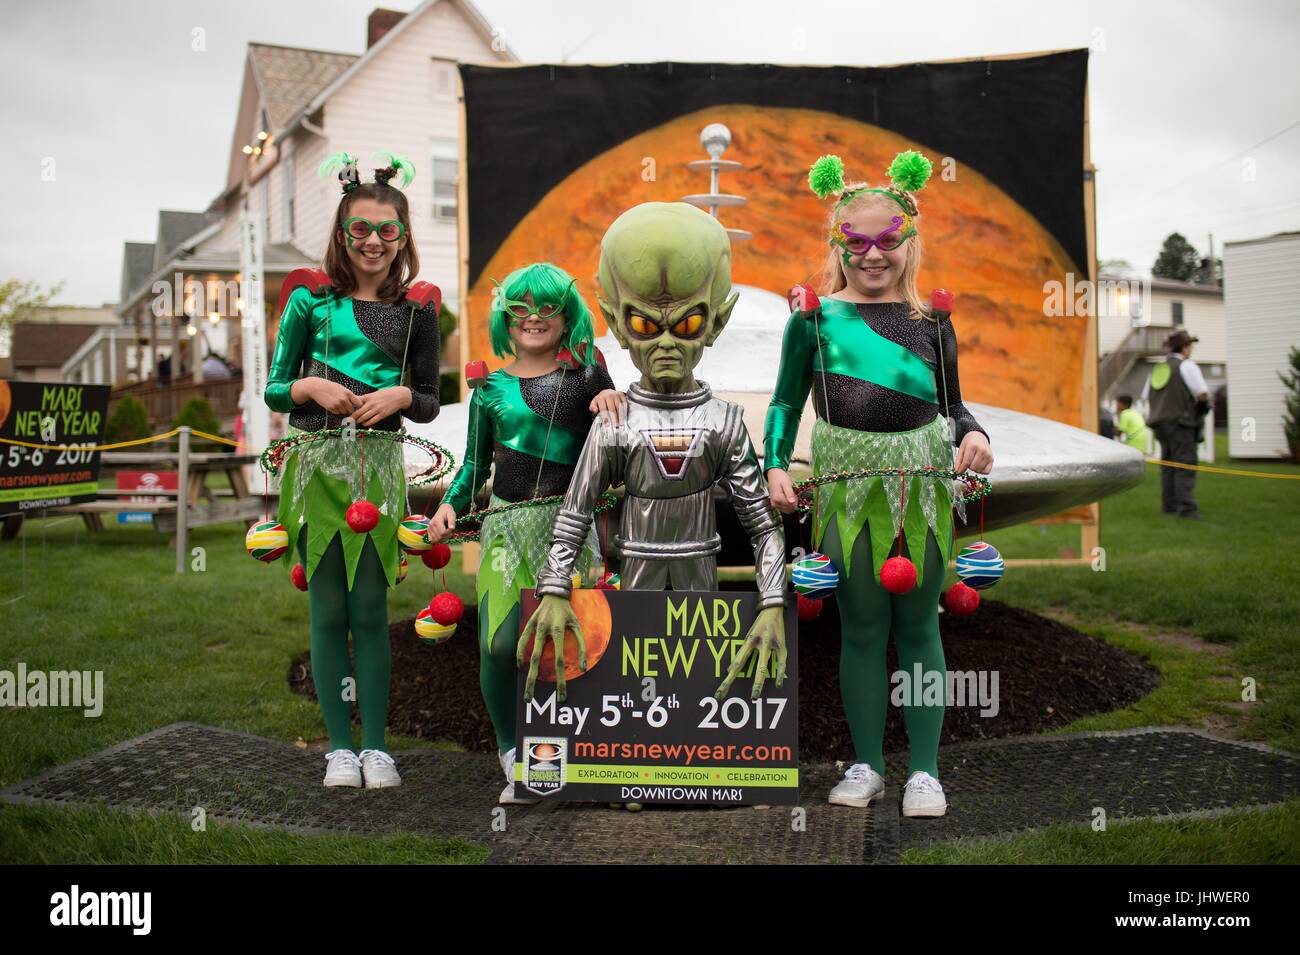 Alien costumes immagini e fotografie stock ad alta risoluzione - Alamy